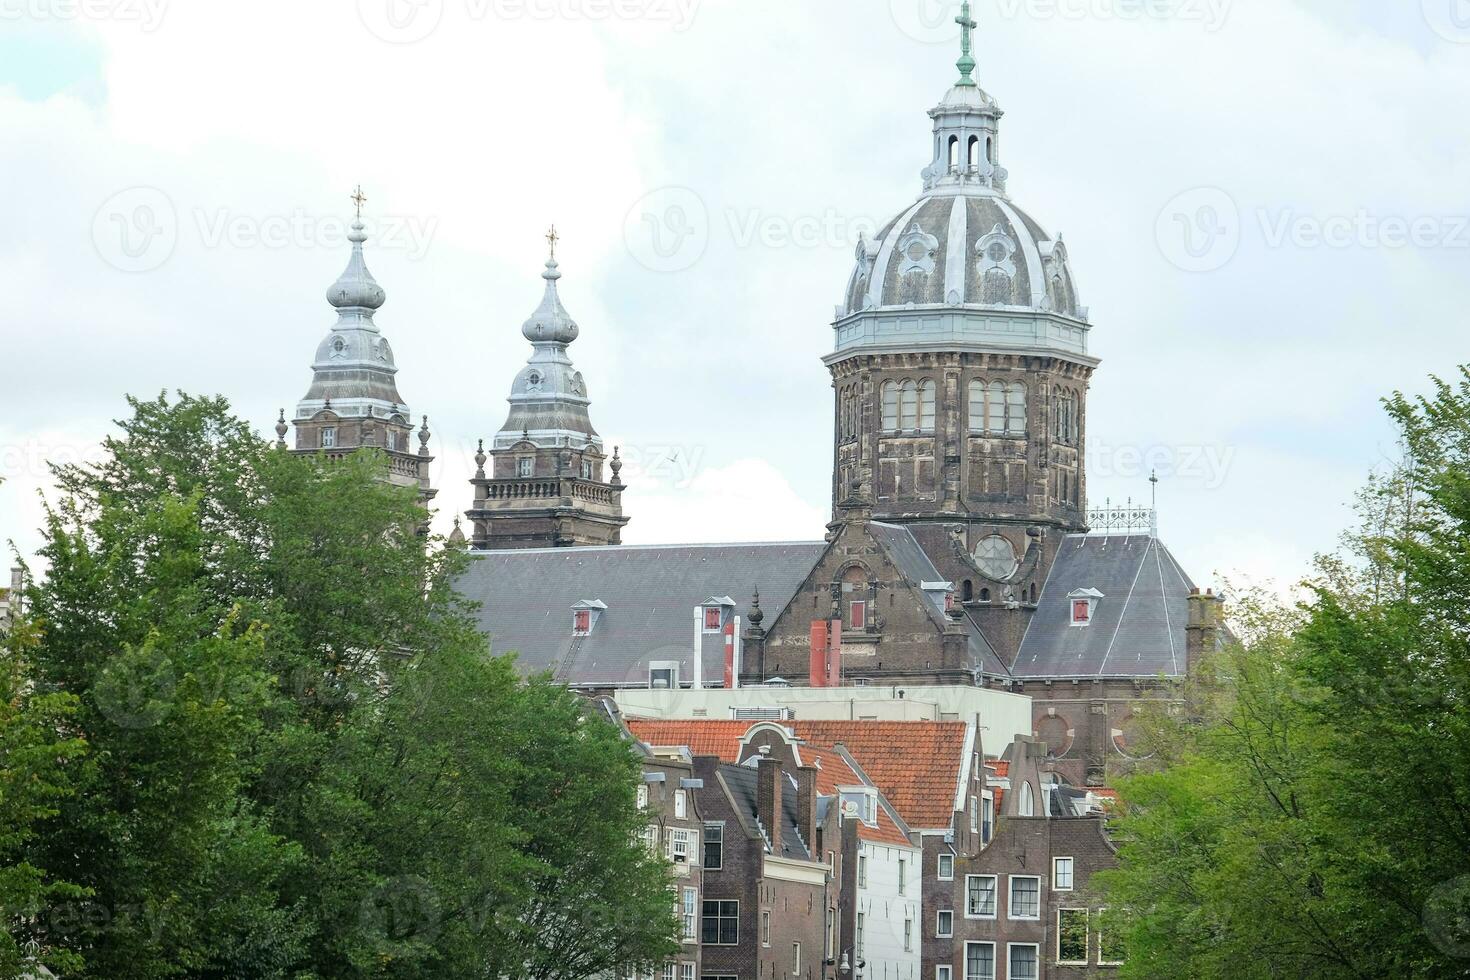 Amsterdam in den Niederlanden foto